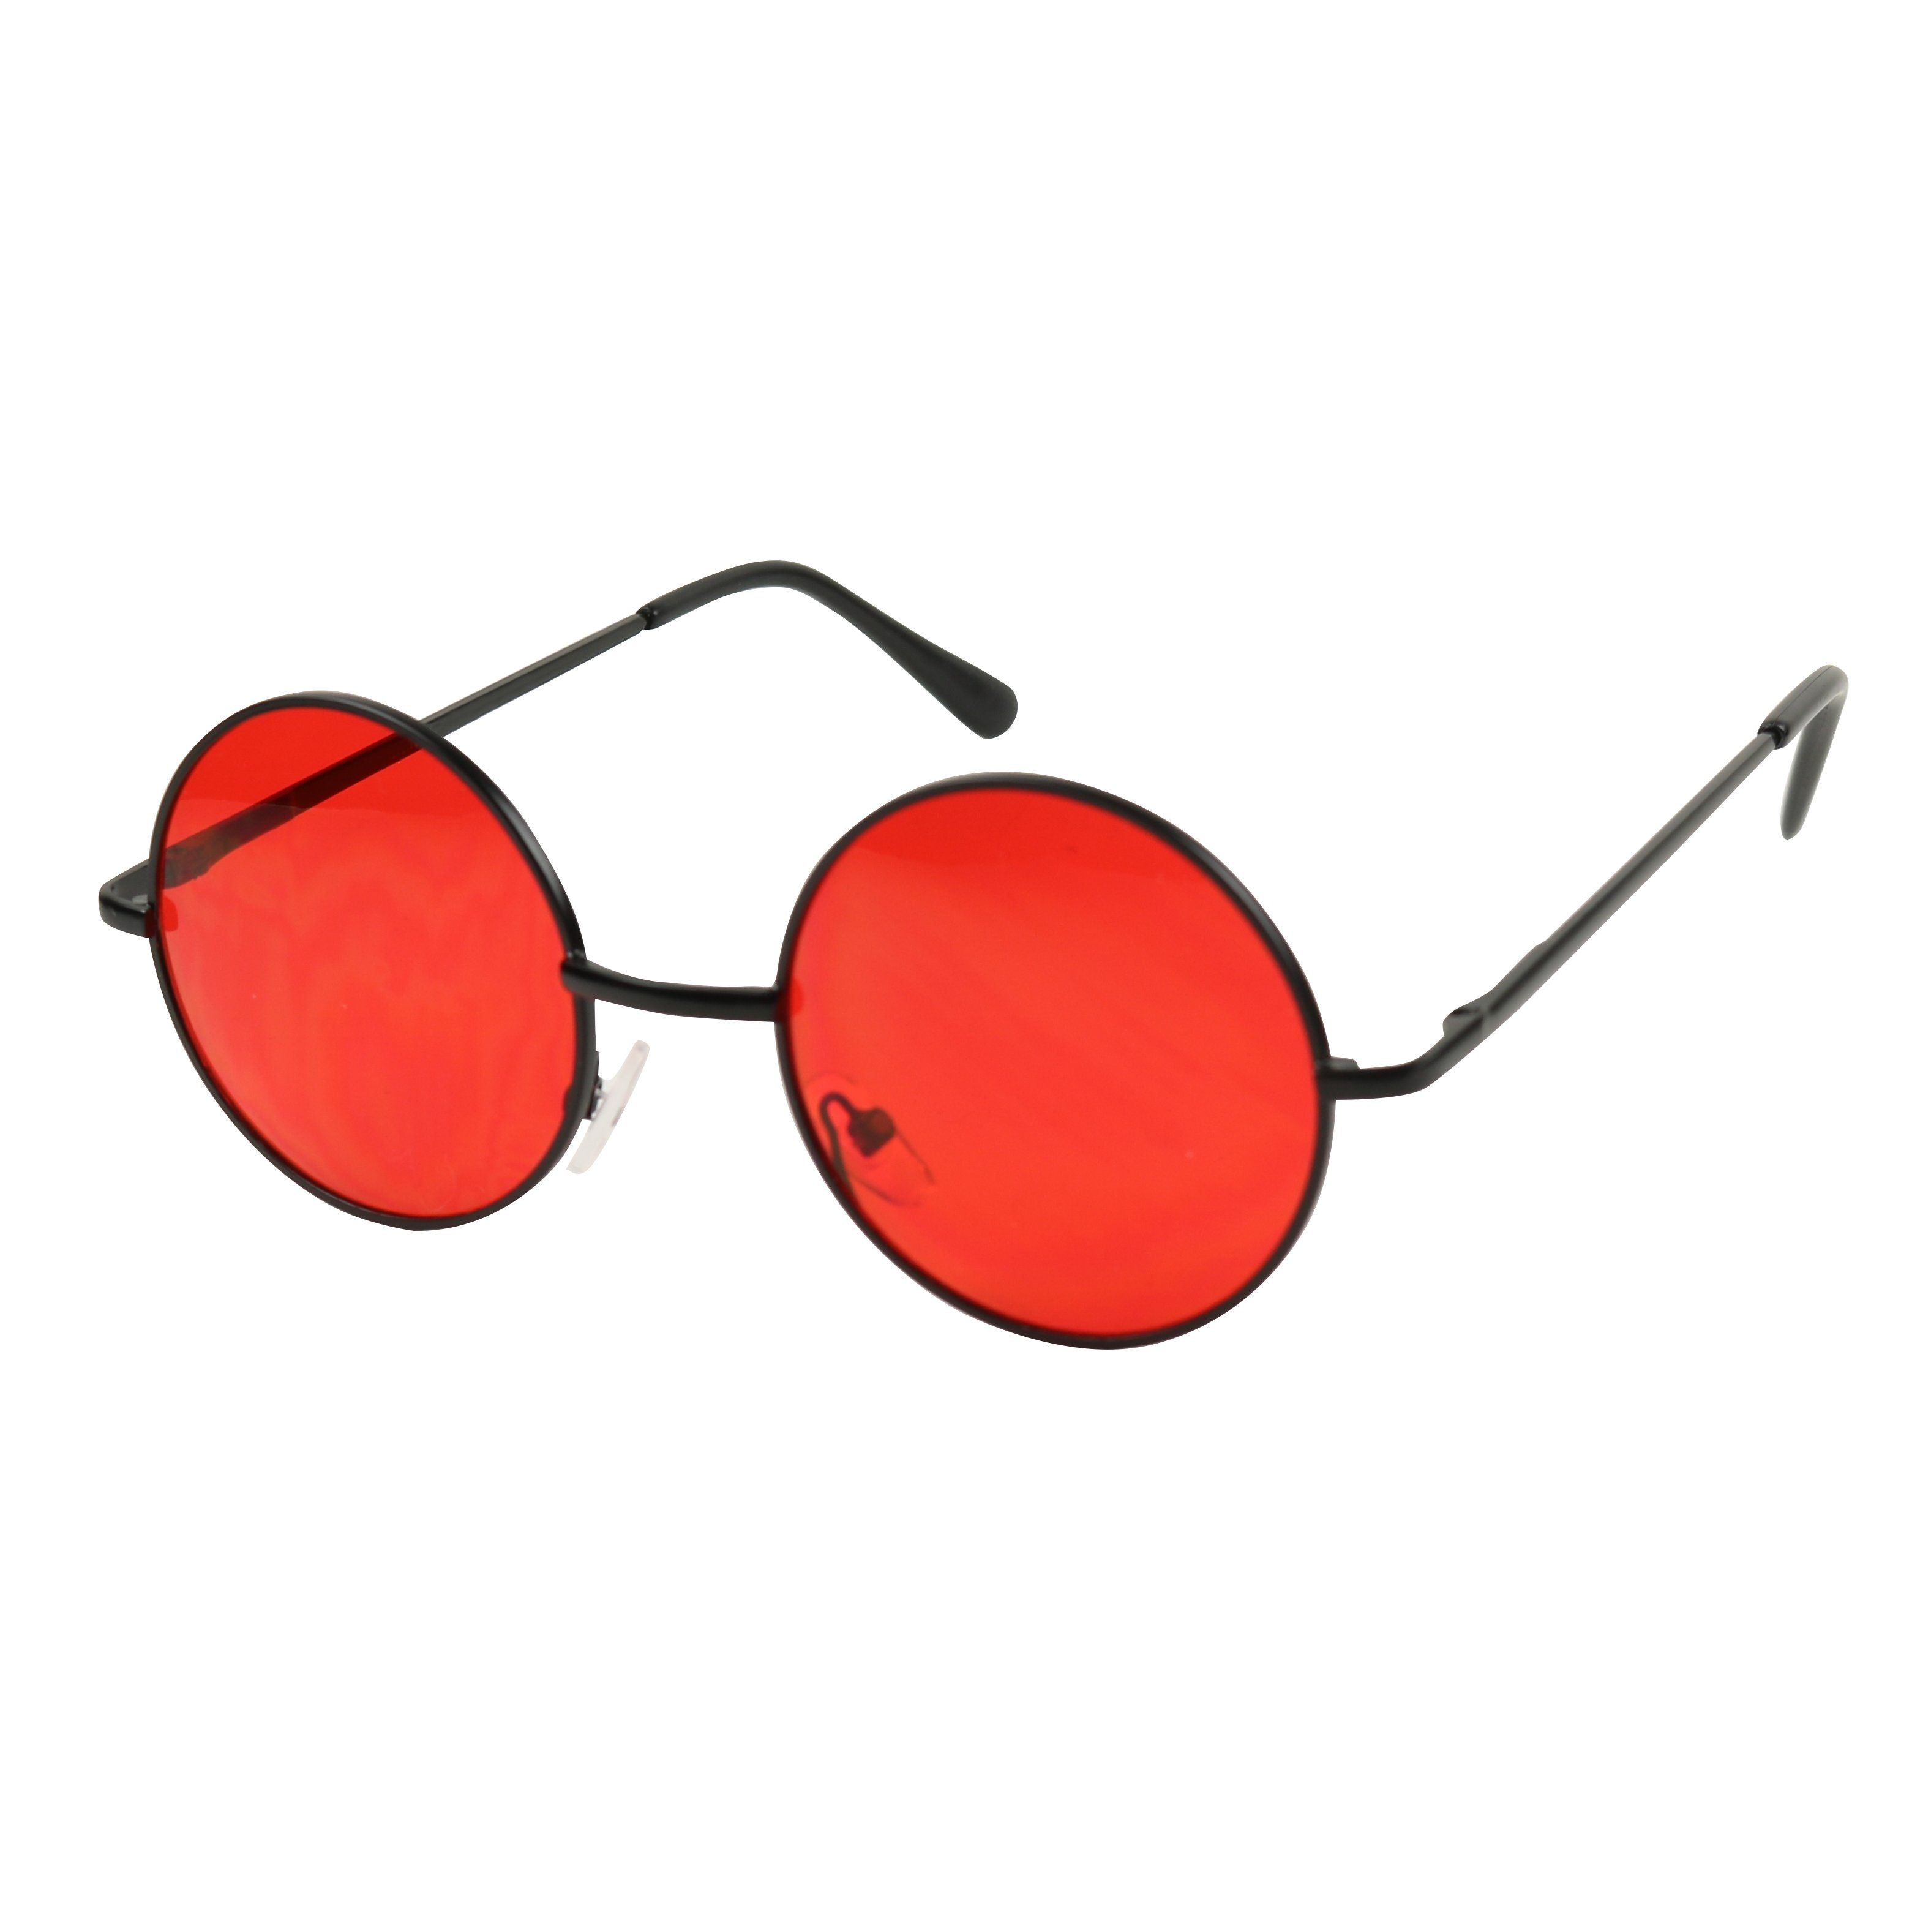 red lens glasses